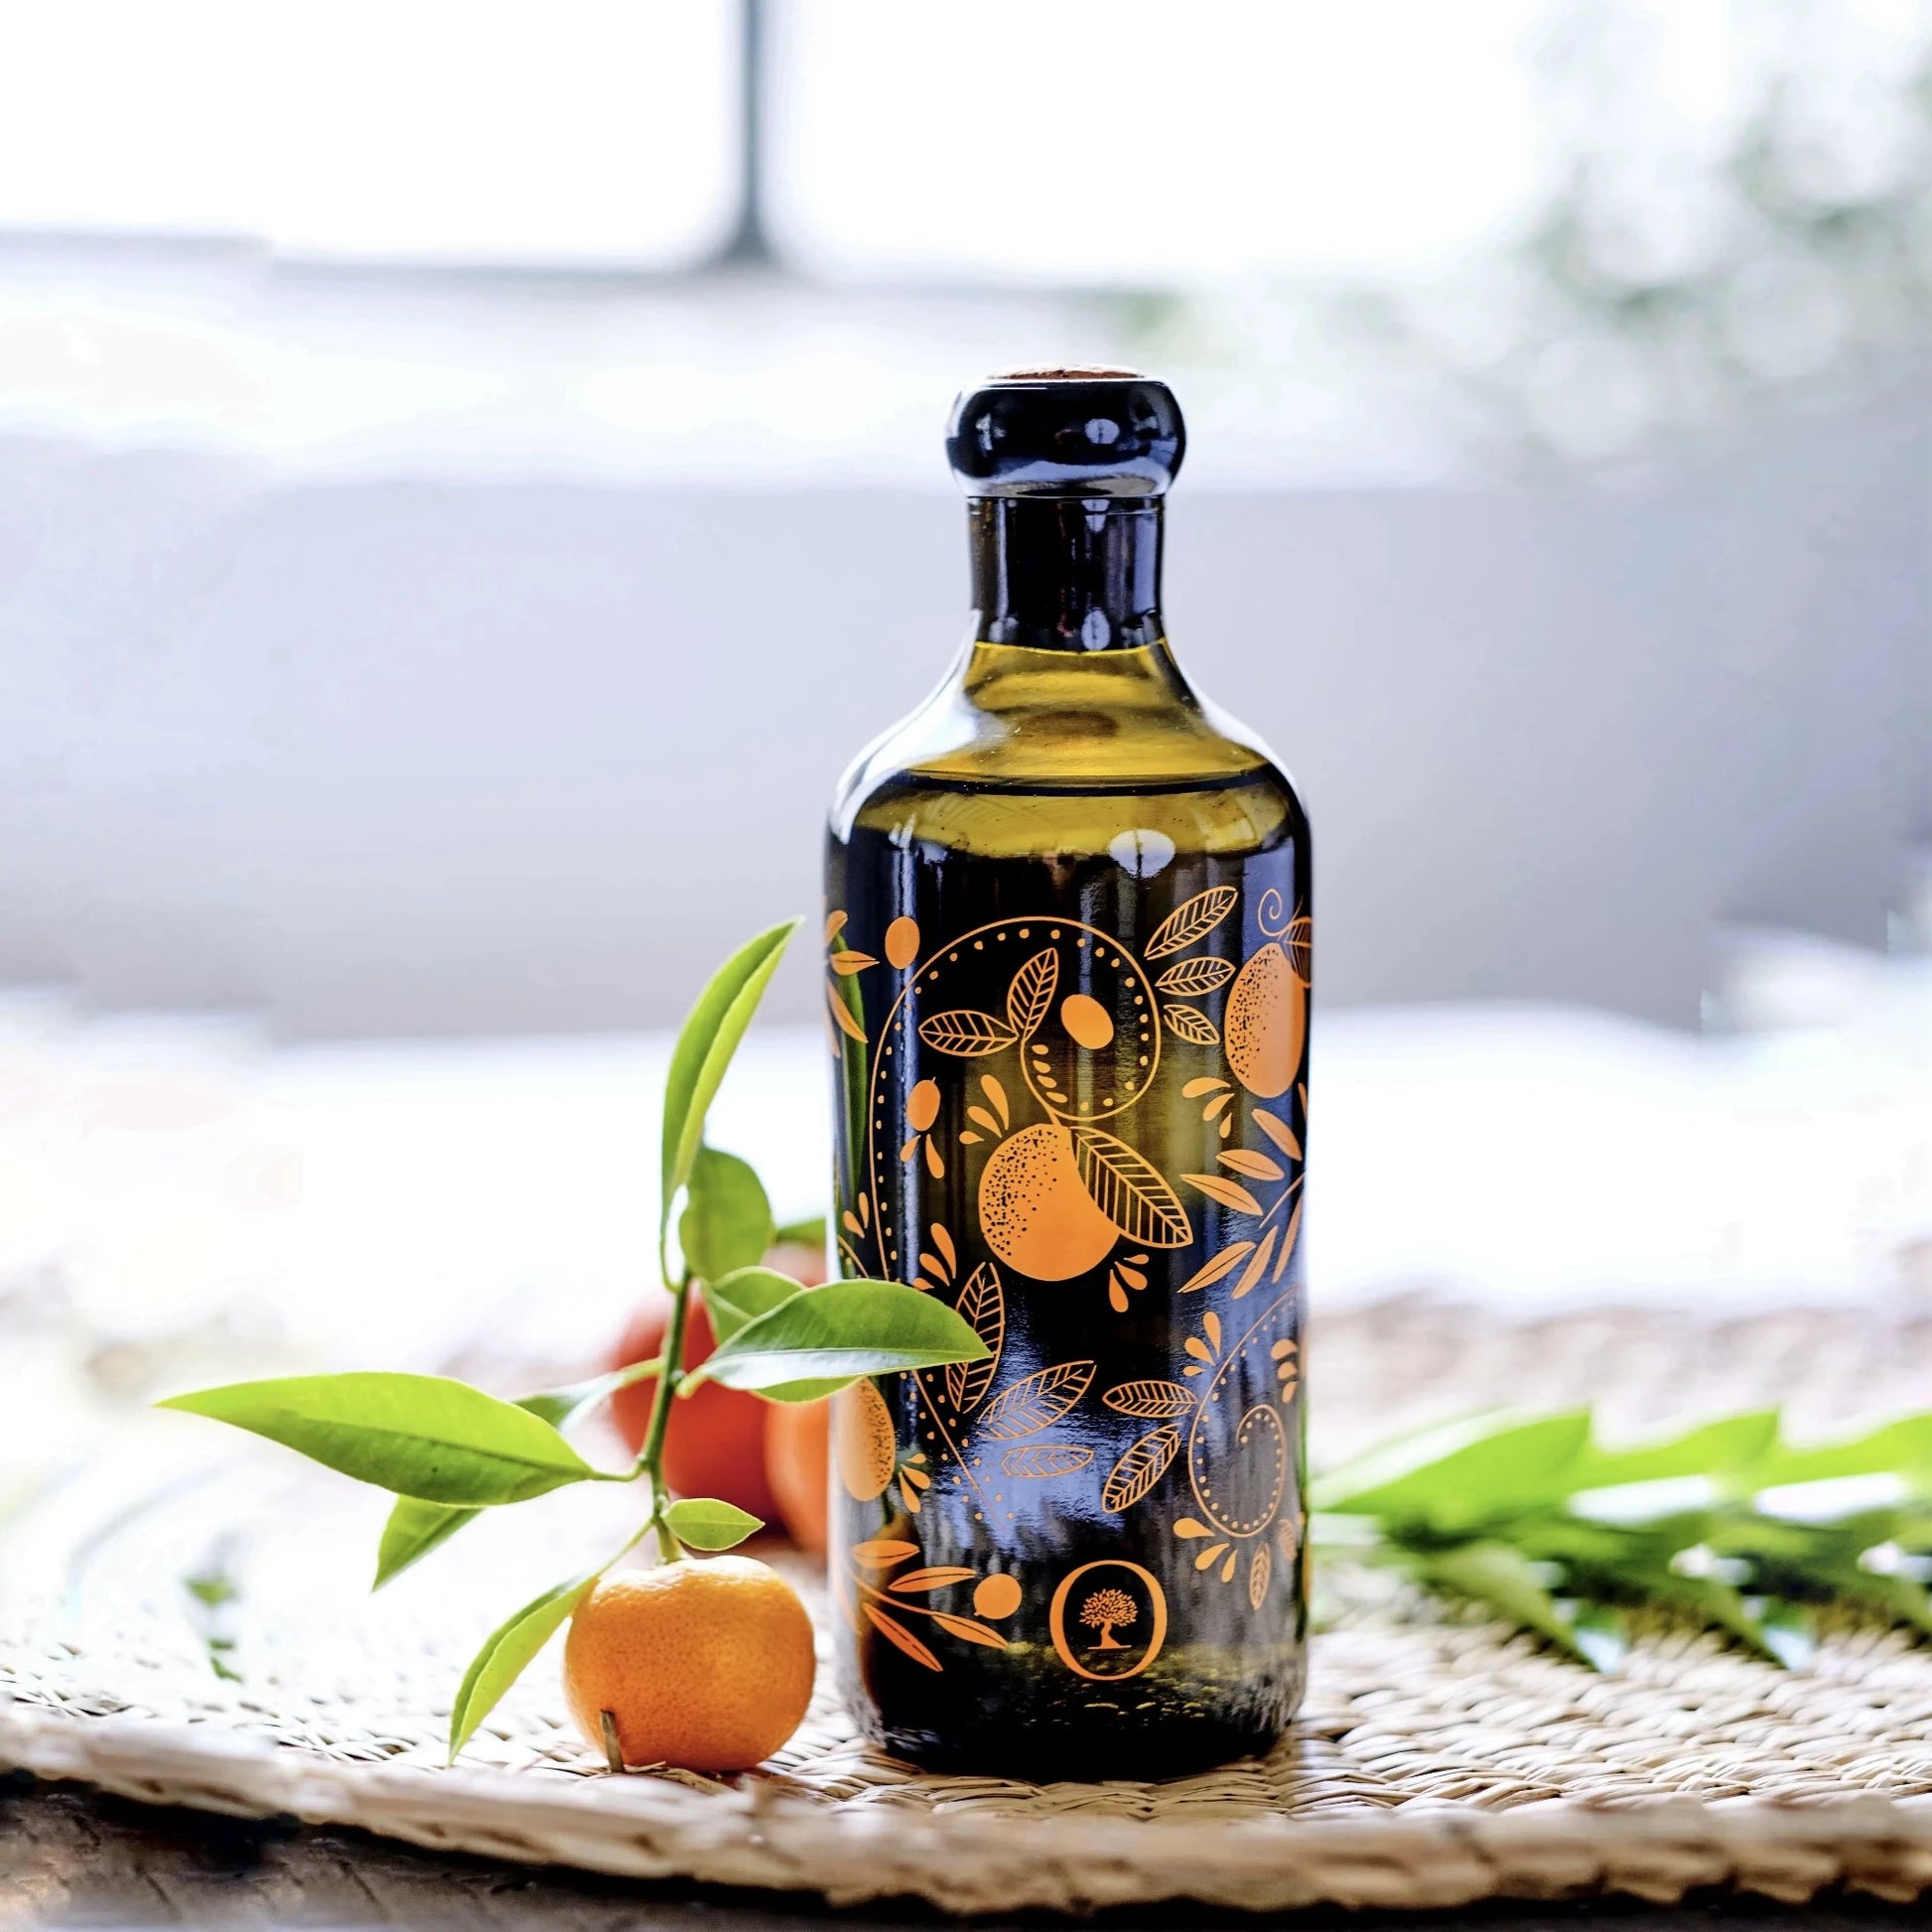 flasche mit olivenöl mit mandarinenaroma, verziert mit orangen mustern, auf einem geflochtenen untersetzer mit einer frischen mandarine und grünen blättern im vordergrund